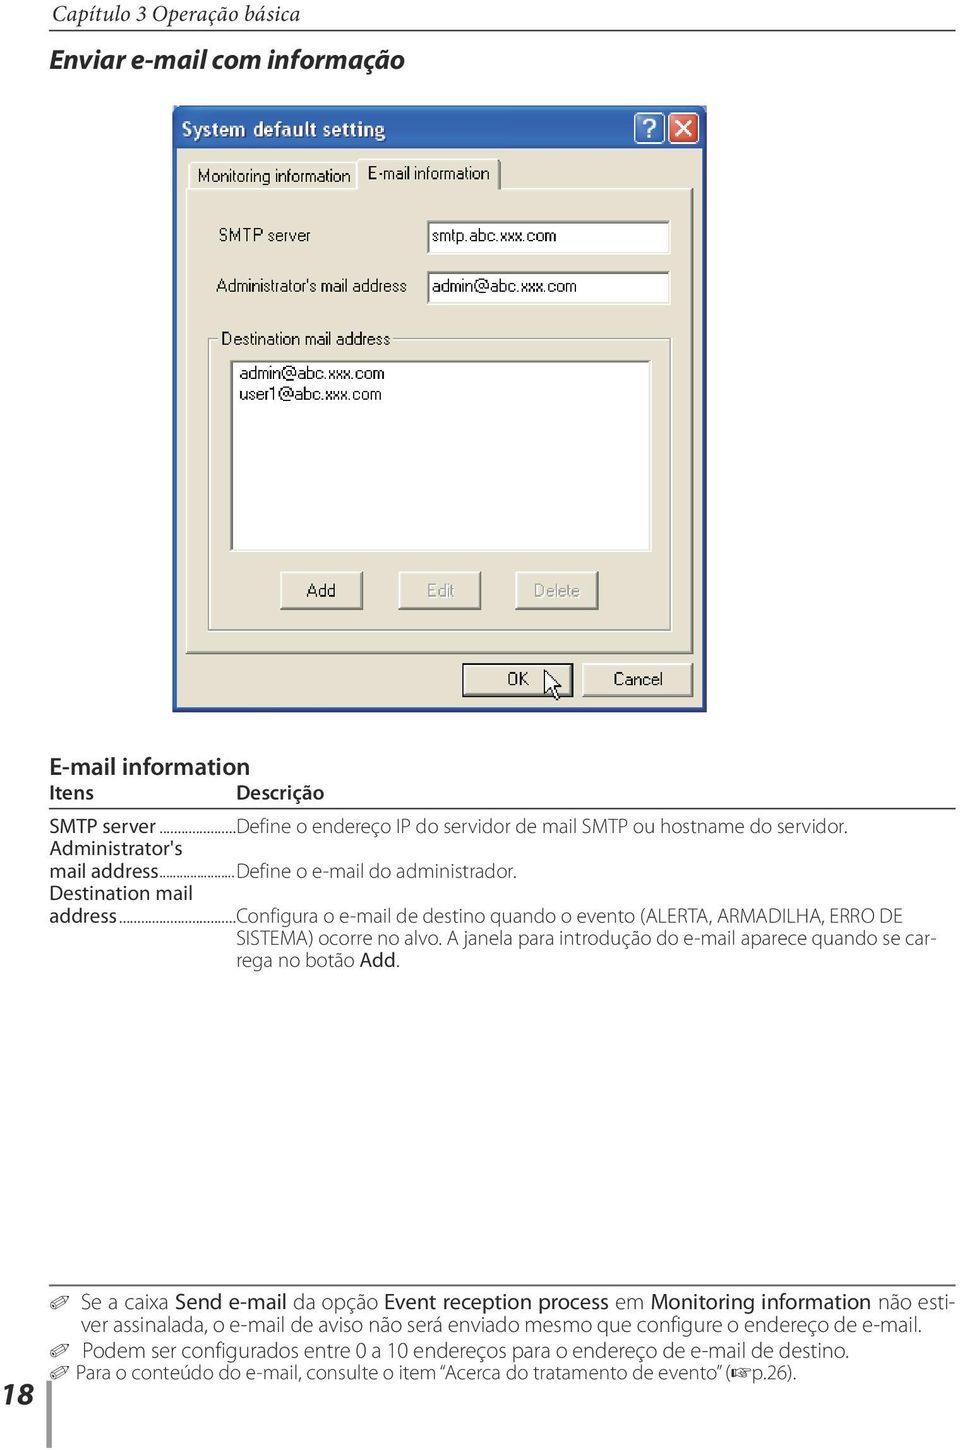 A janela para introdução do e-mail aparece quando se carrega no botão Add.